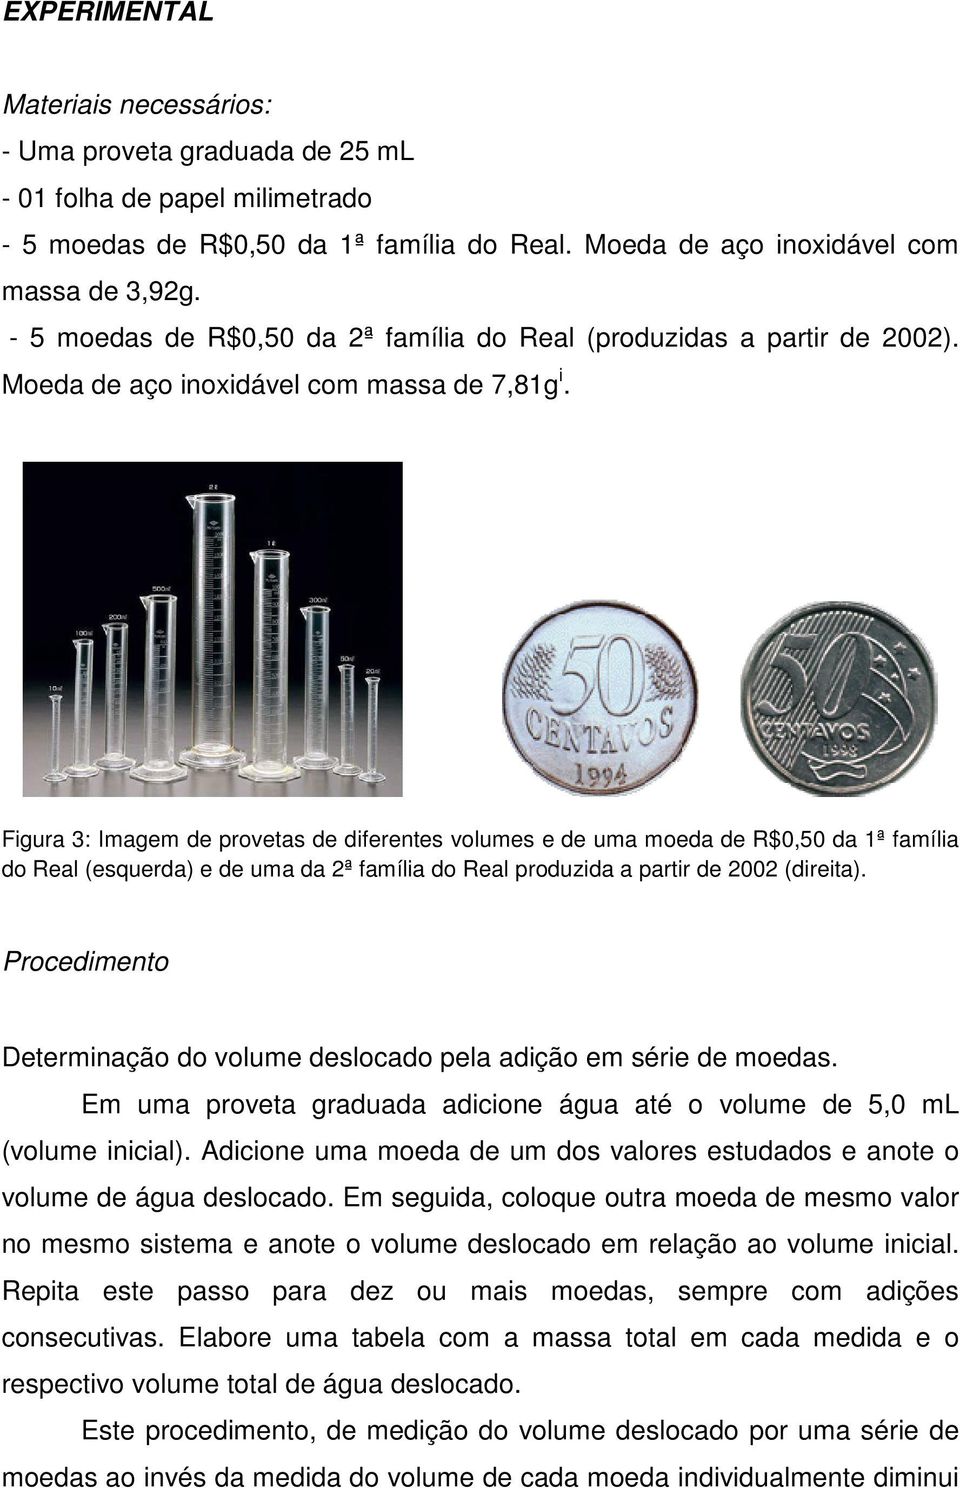 Figura 3: Imagem de provetas de diferentes volumes e de uma moeda de R$0,50 da 1ª família do Real (esquerda) e de uma da 2ª família do Real produzida a partir de 2002 (direita).